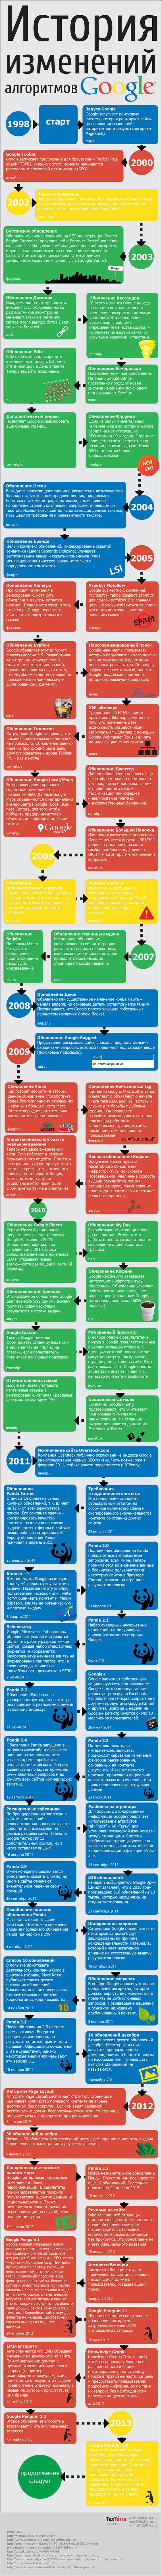 История изменений алгоритмов Google (Инфографика)